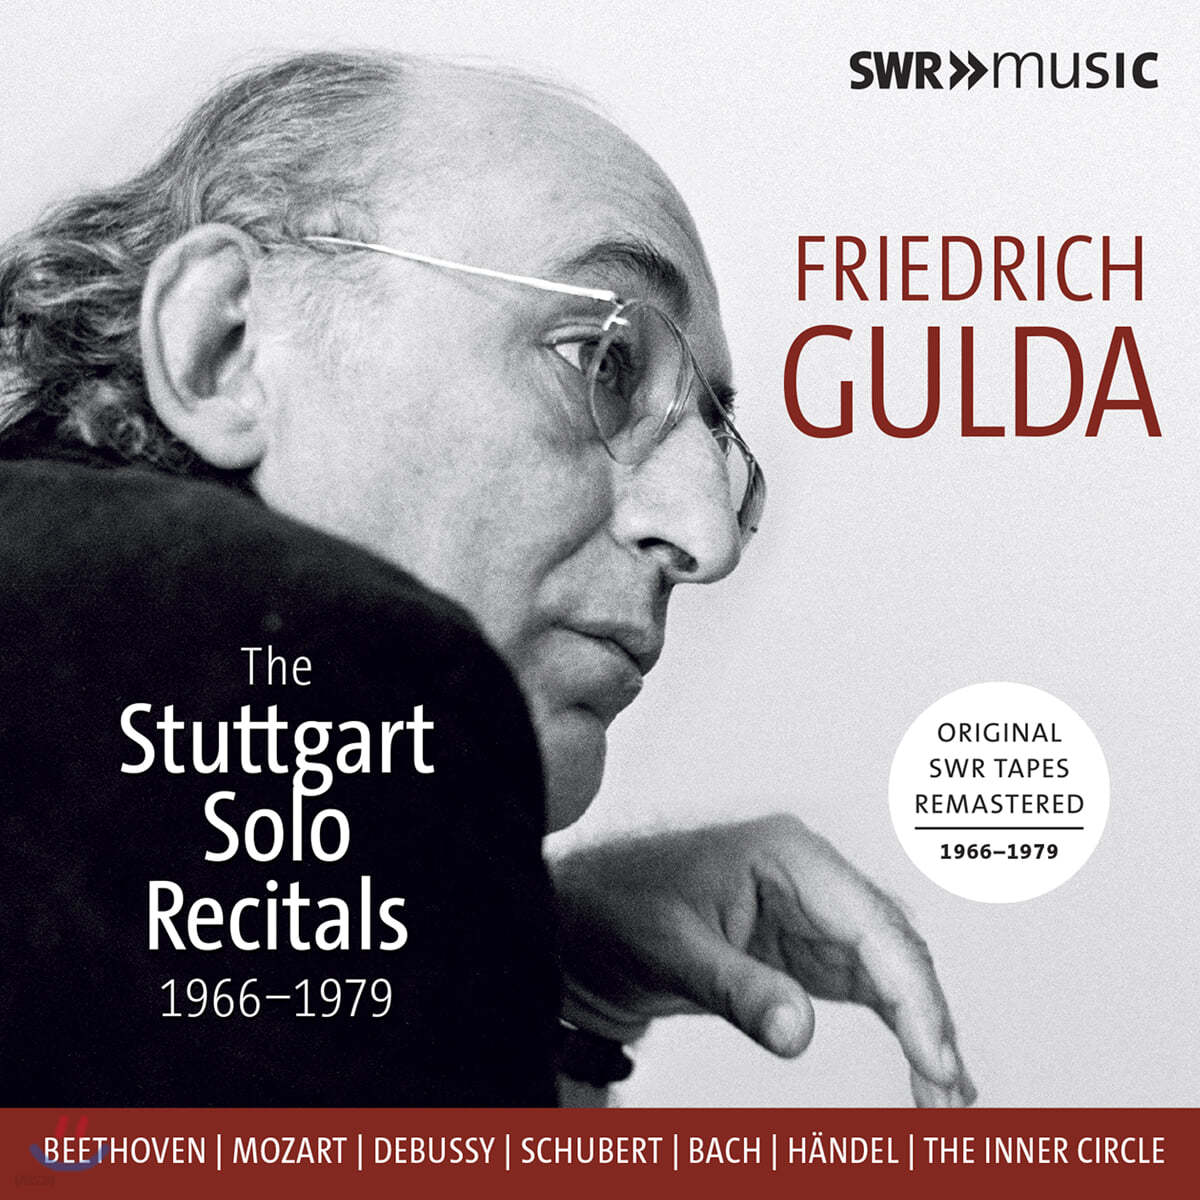 프리드리히 굴다 슈투트가르트 독주회 녹음 (Friedrich Gulda The Stuttgart Solo Recitals)